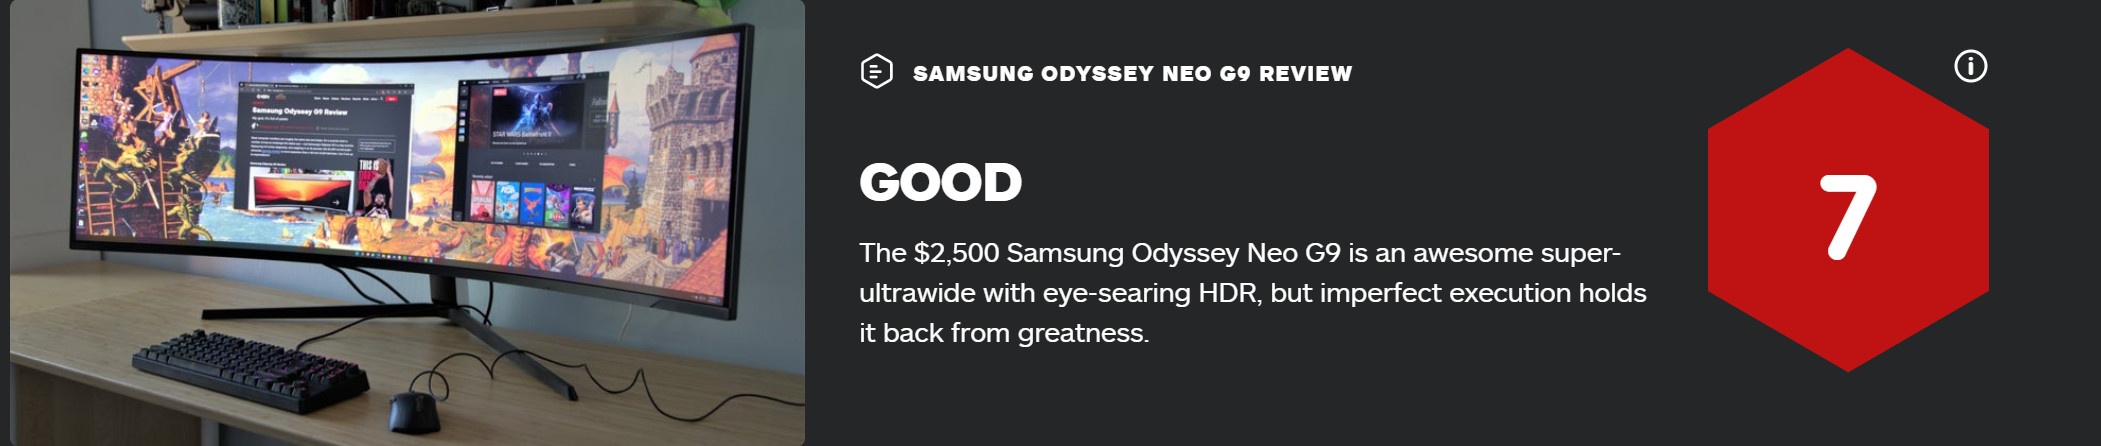 三星奥德赛Neo G9显示器 获IGN 7分评价